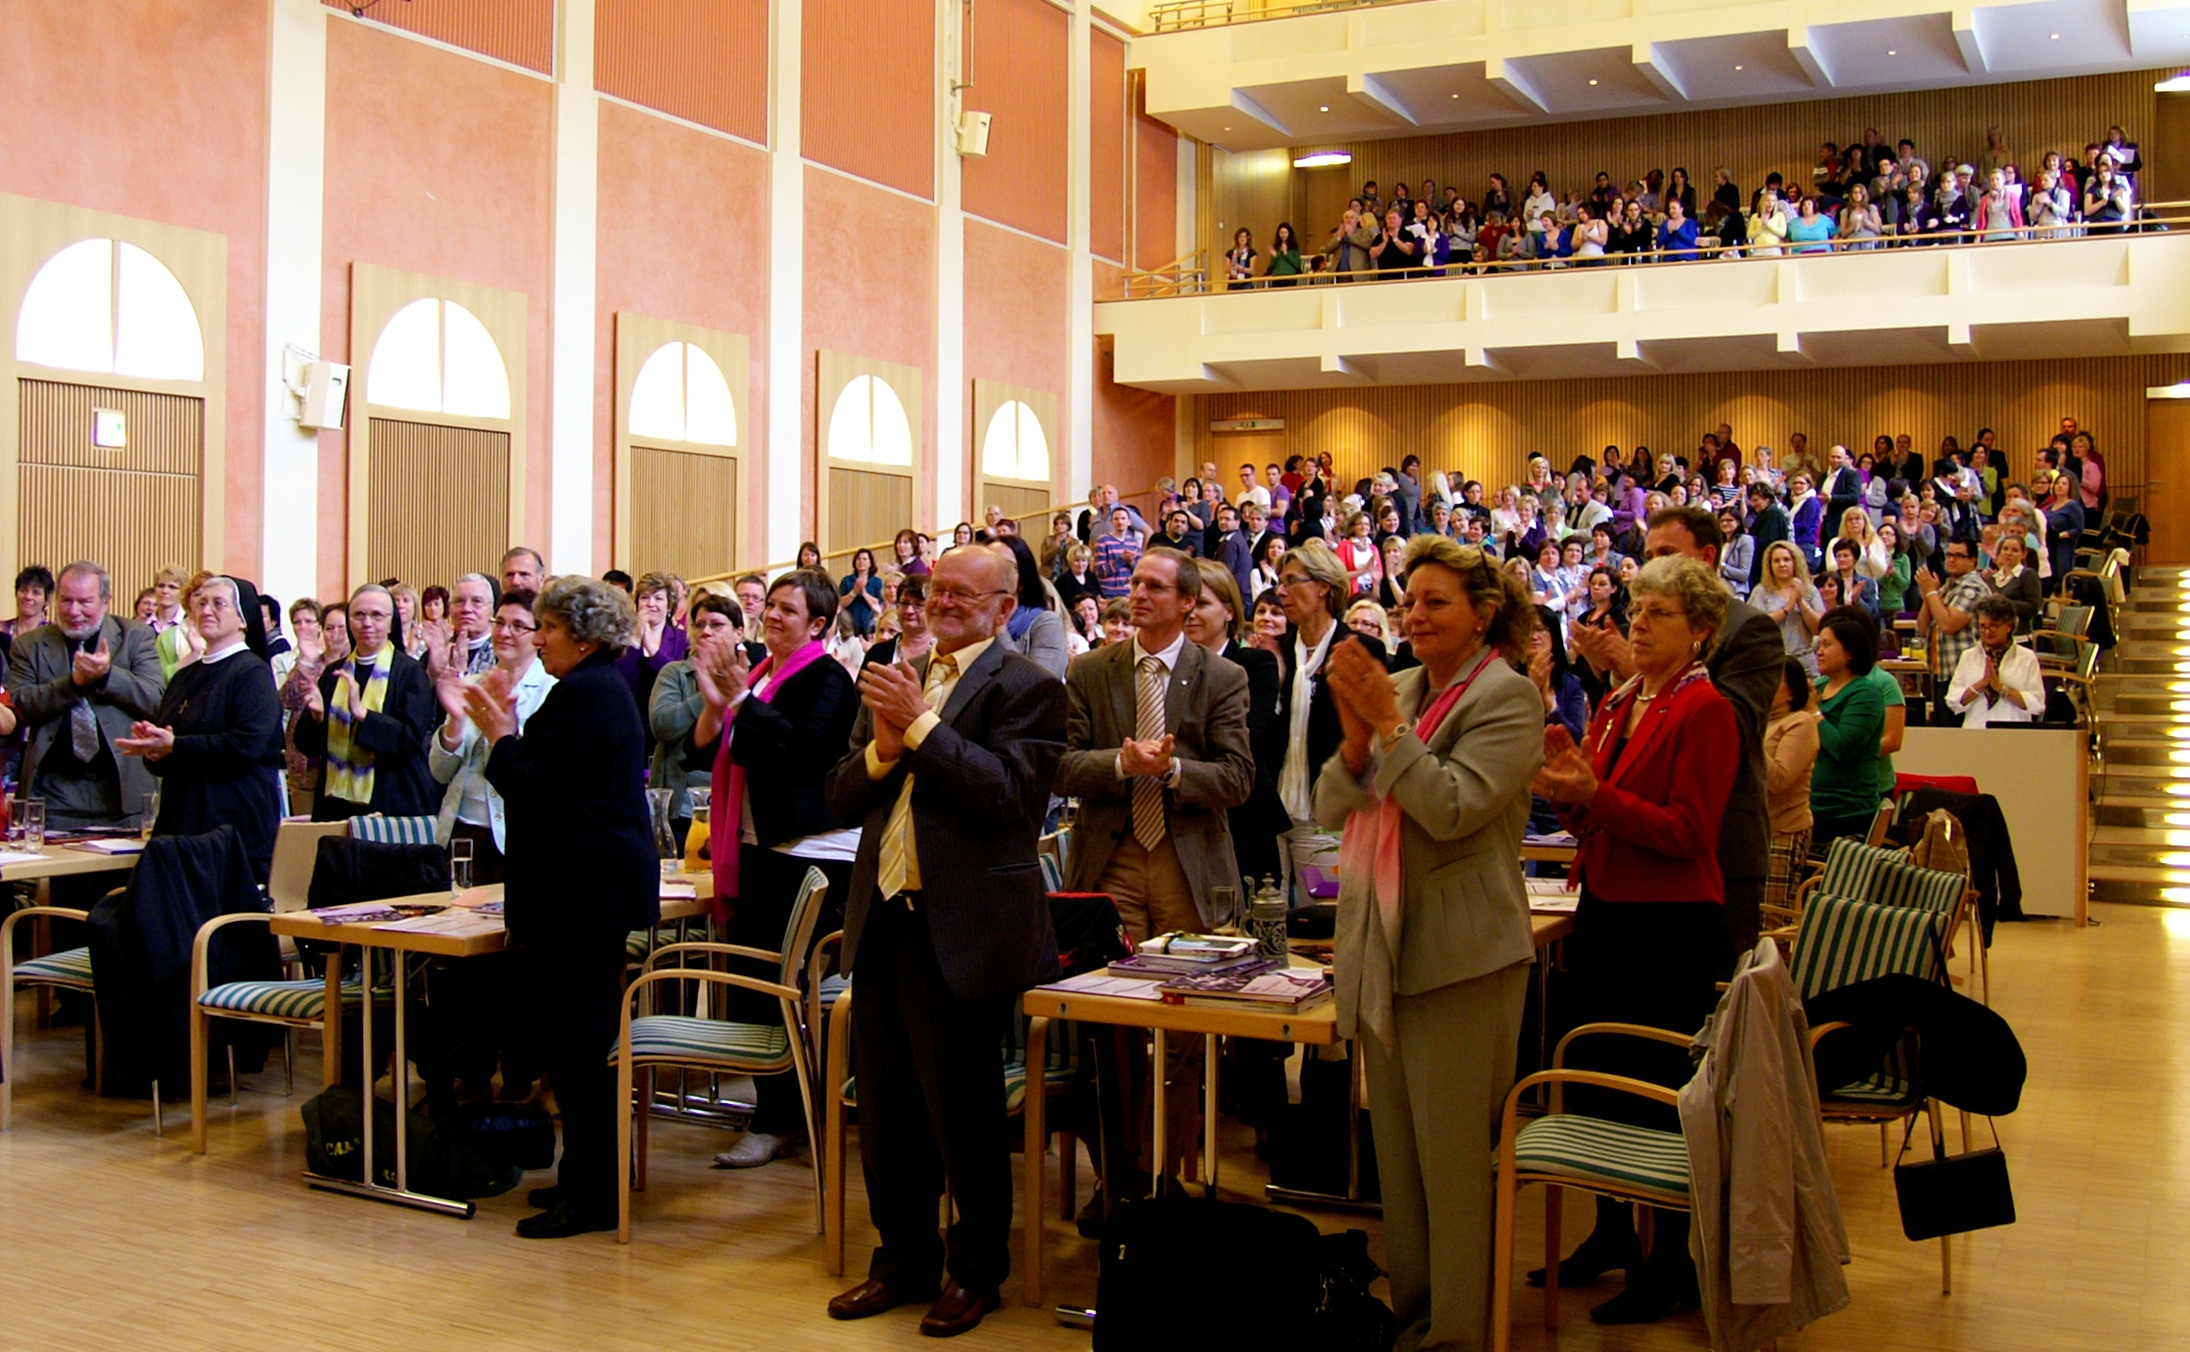 standing ovations der rund 500 Kongressgäste für Sr. Liliane Juchli